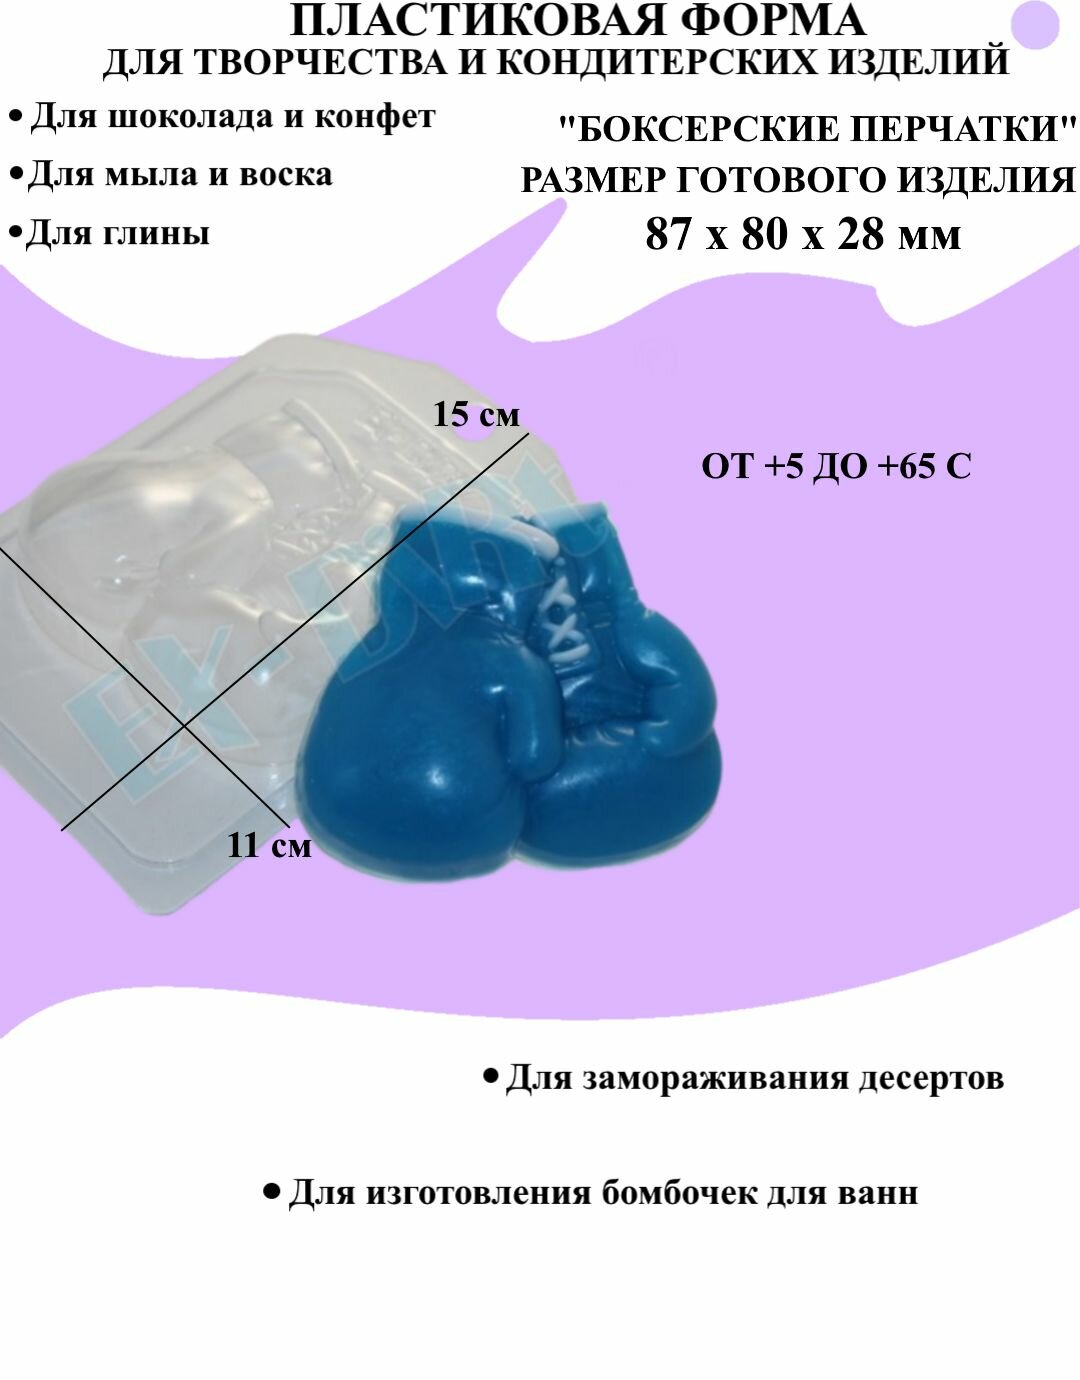 Форма пластиковая для мыла и шоколада / Боксерские перчатки